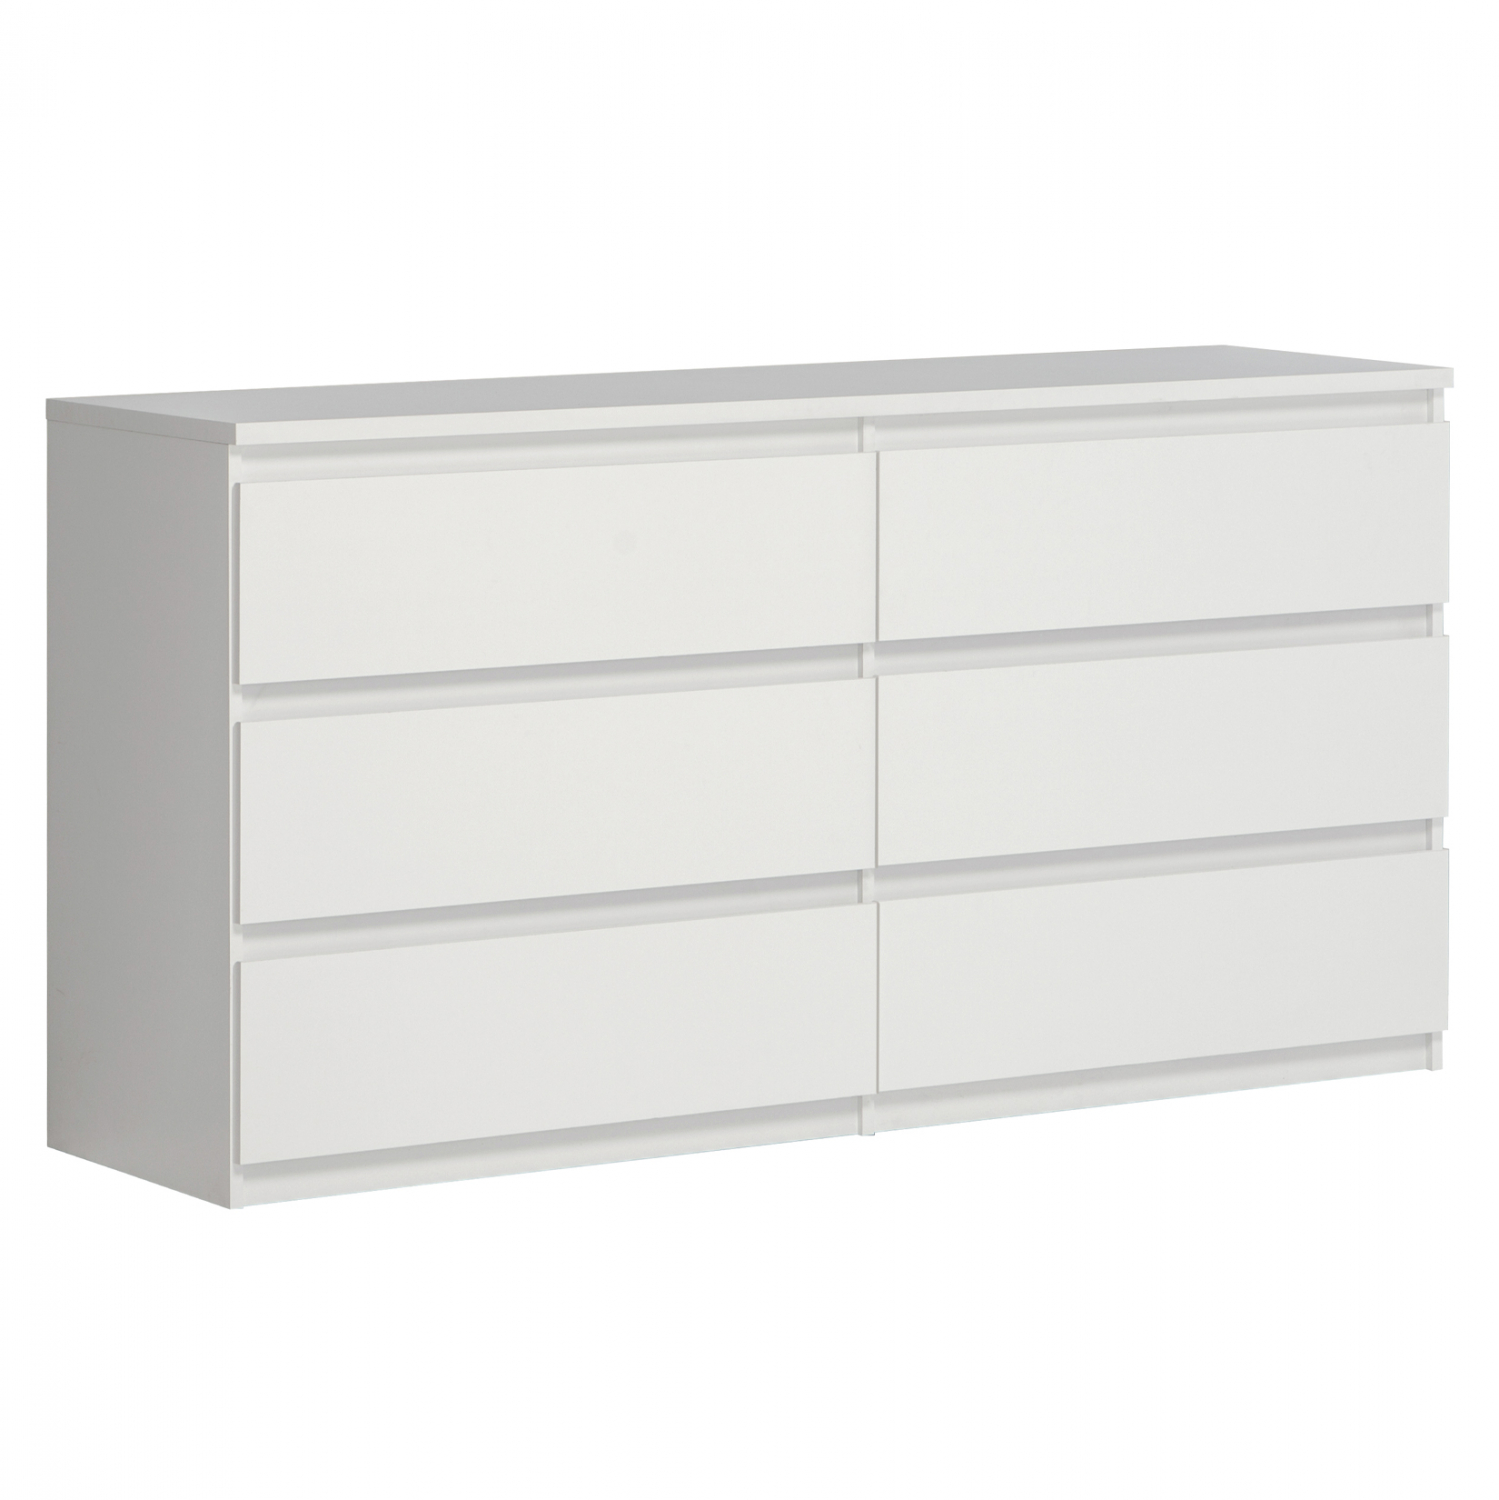 Συρταριέρα “BRANCO” με 6 συρτάρια σε χρώμα λευκό 154×42,2×79,9